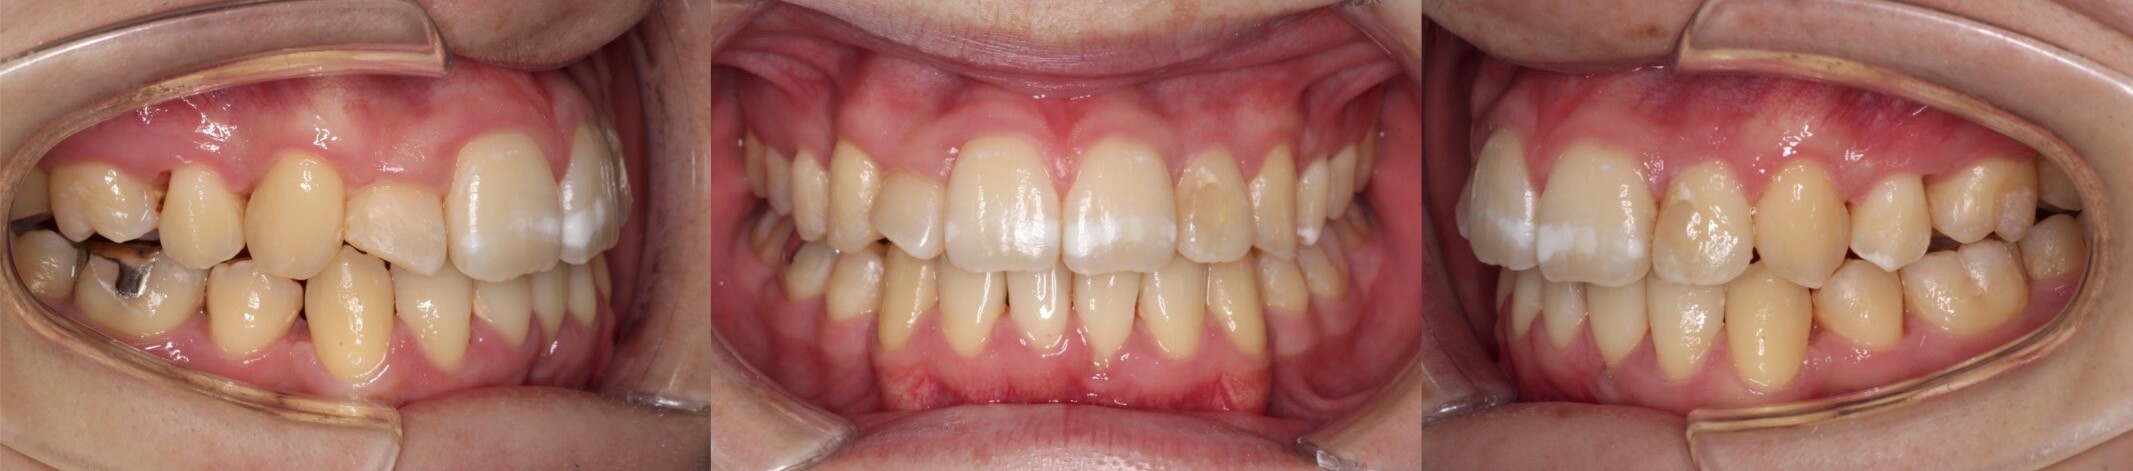 歯肉退縮治療・インビザライン